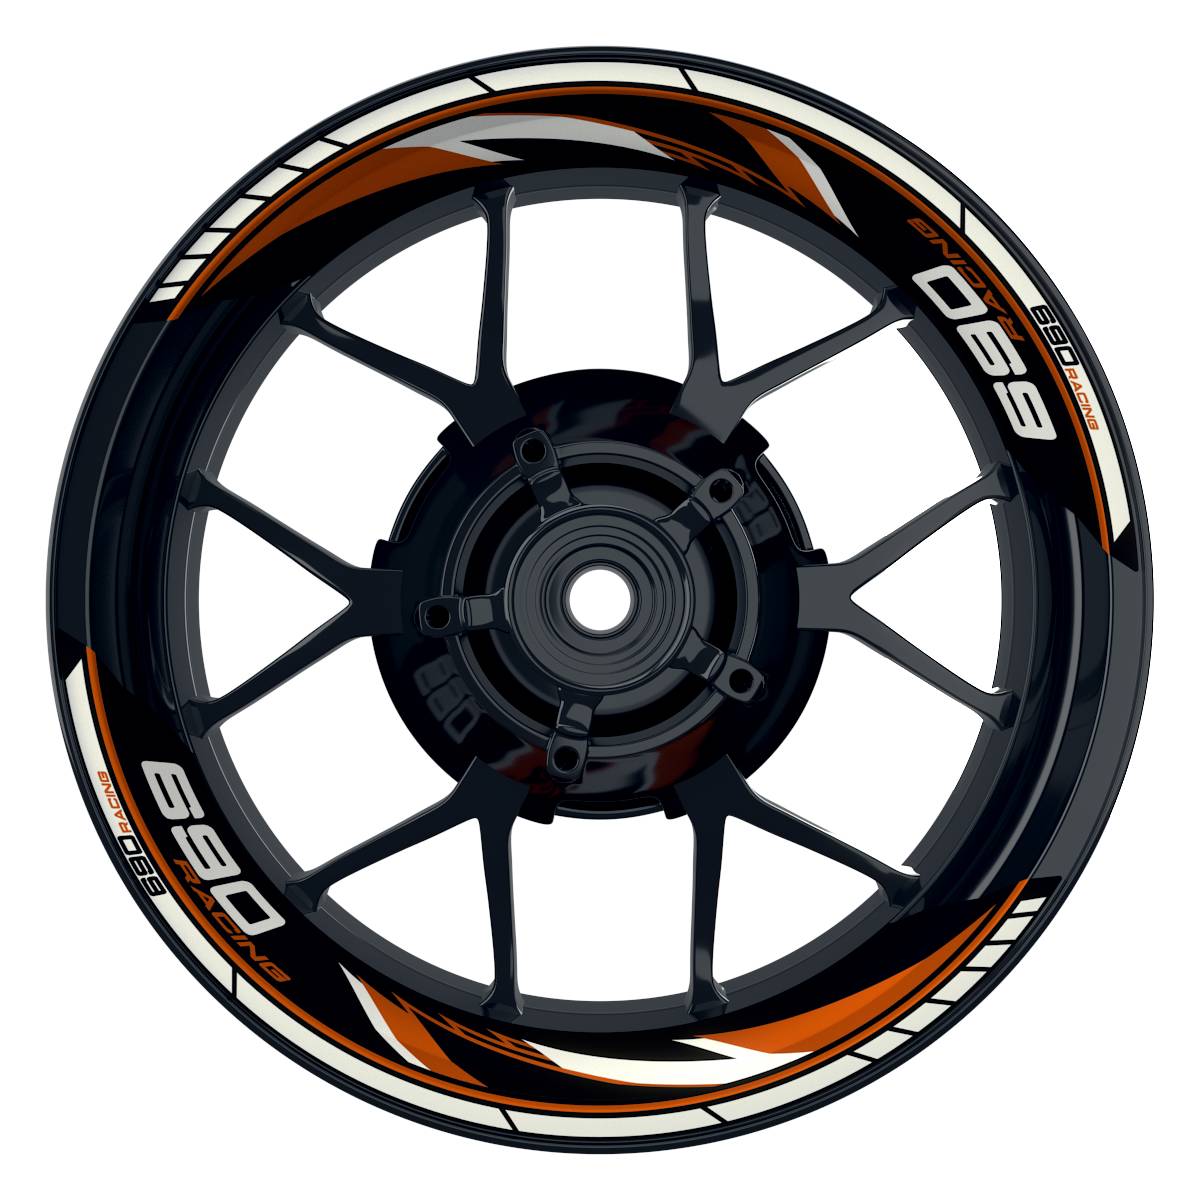 KTM Racing 690 Razor schwarz orange Frontansicht